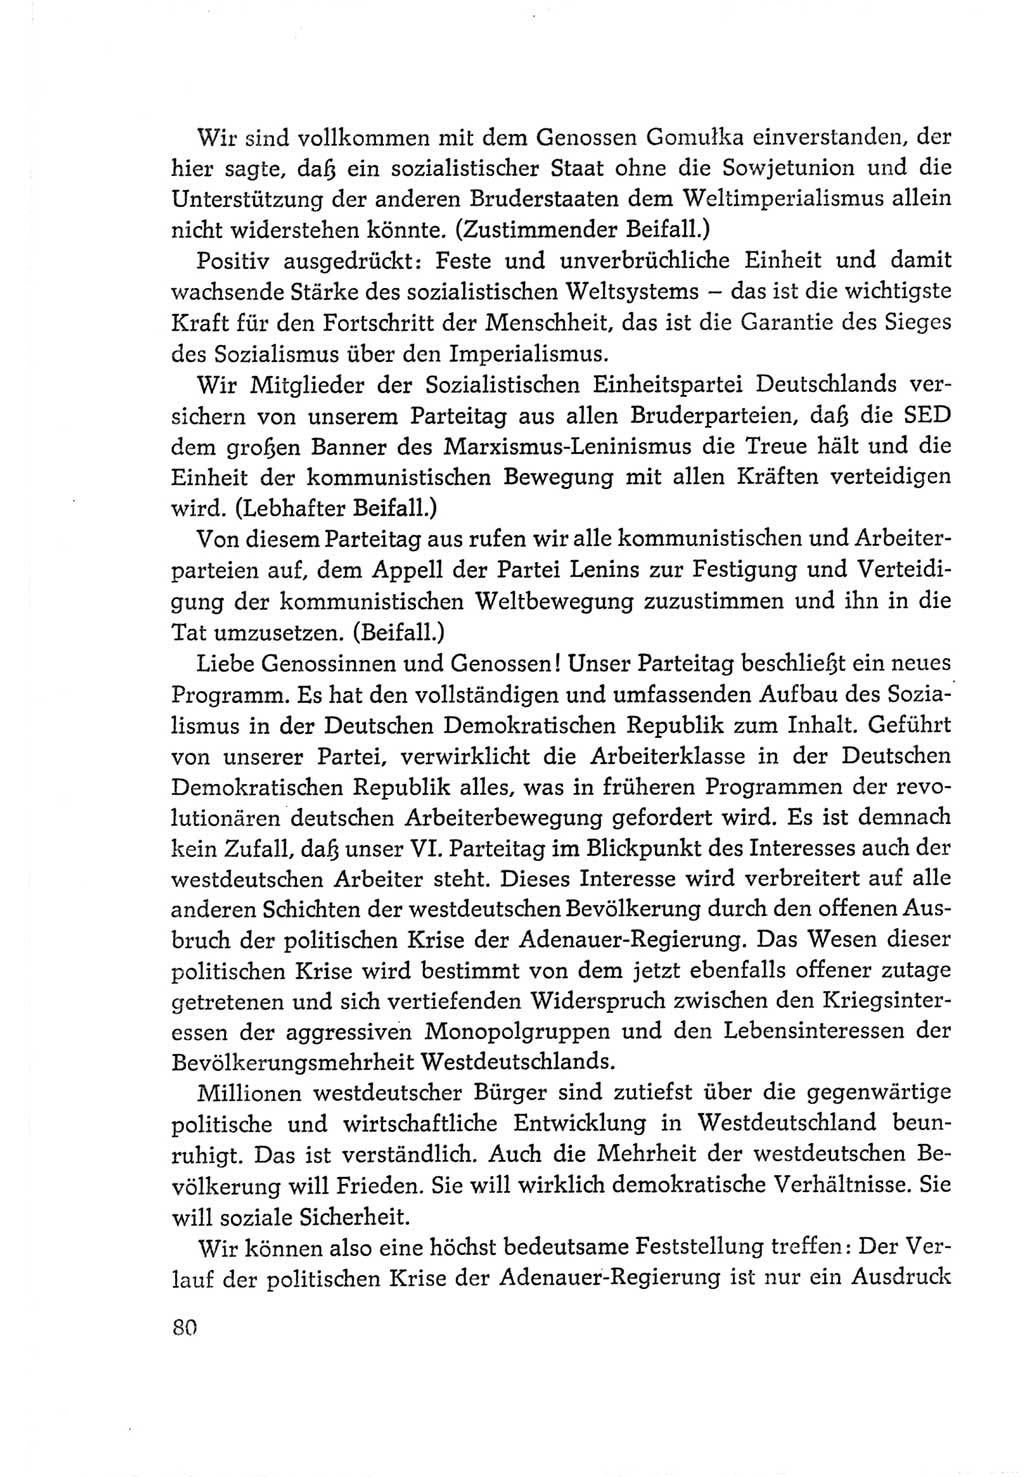 Protokoll der Verhandlungen des Ⅵ. Parteitages der Sozialistischen Einheitspartei Deutschlands (SED) [Deutsche Demokratische Republik (DDR)] 1963, Band Ⅱ, Seite 80 (Prot. Verh. Ⅵ. PT SED DDR 1963, Bd. Ⅱ, S. 80)